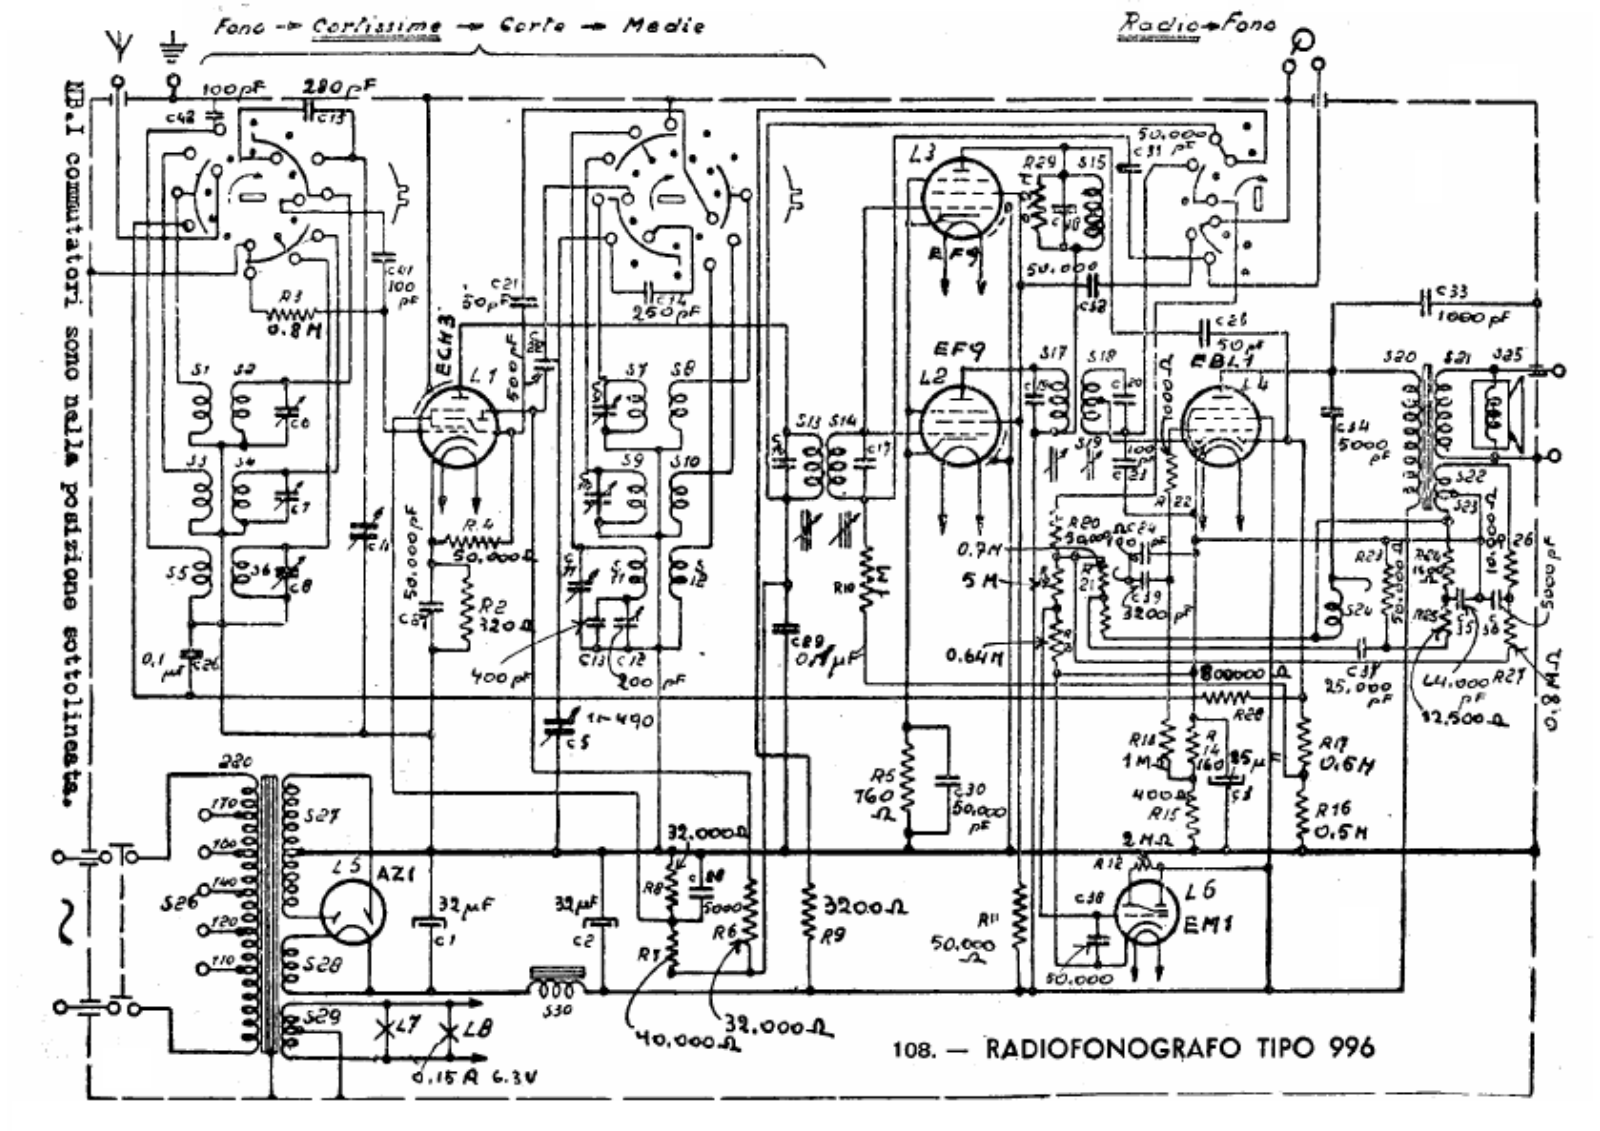 Philips 996 schematic